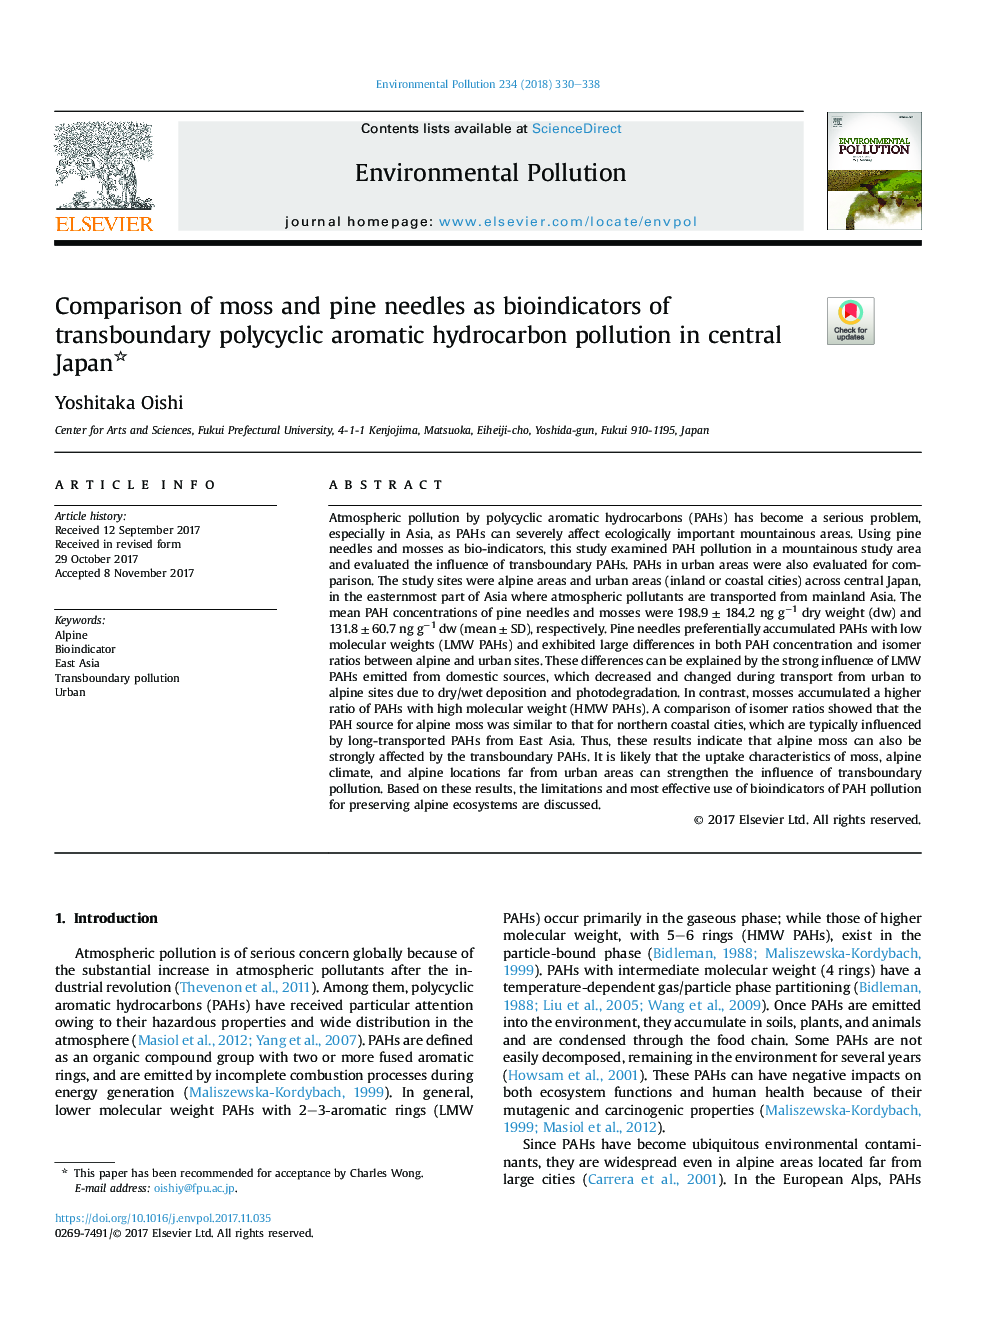 مقایسه قارچ و سوزن کاج به عنوان نشانگرهای زیست محیطی آلودگی هیدروکربنی آروماتیک چندسانی مرزی در مرکزی ژاپن 